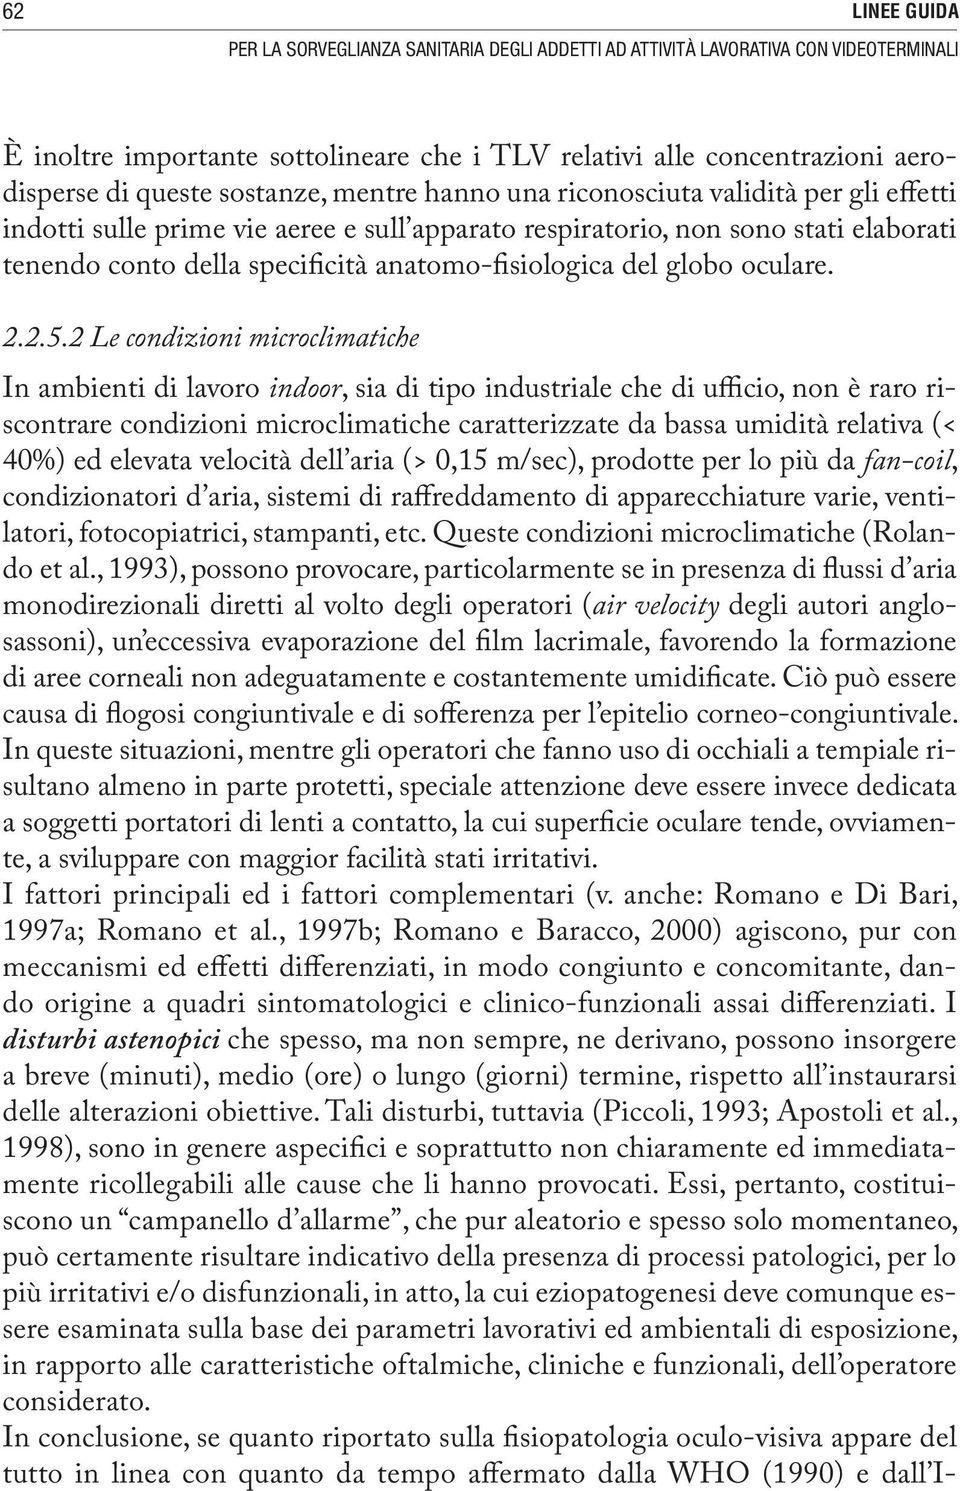 anatomo-fisiologica del globo oculare. 2.2.5.